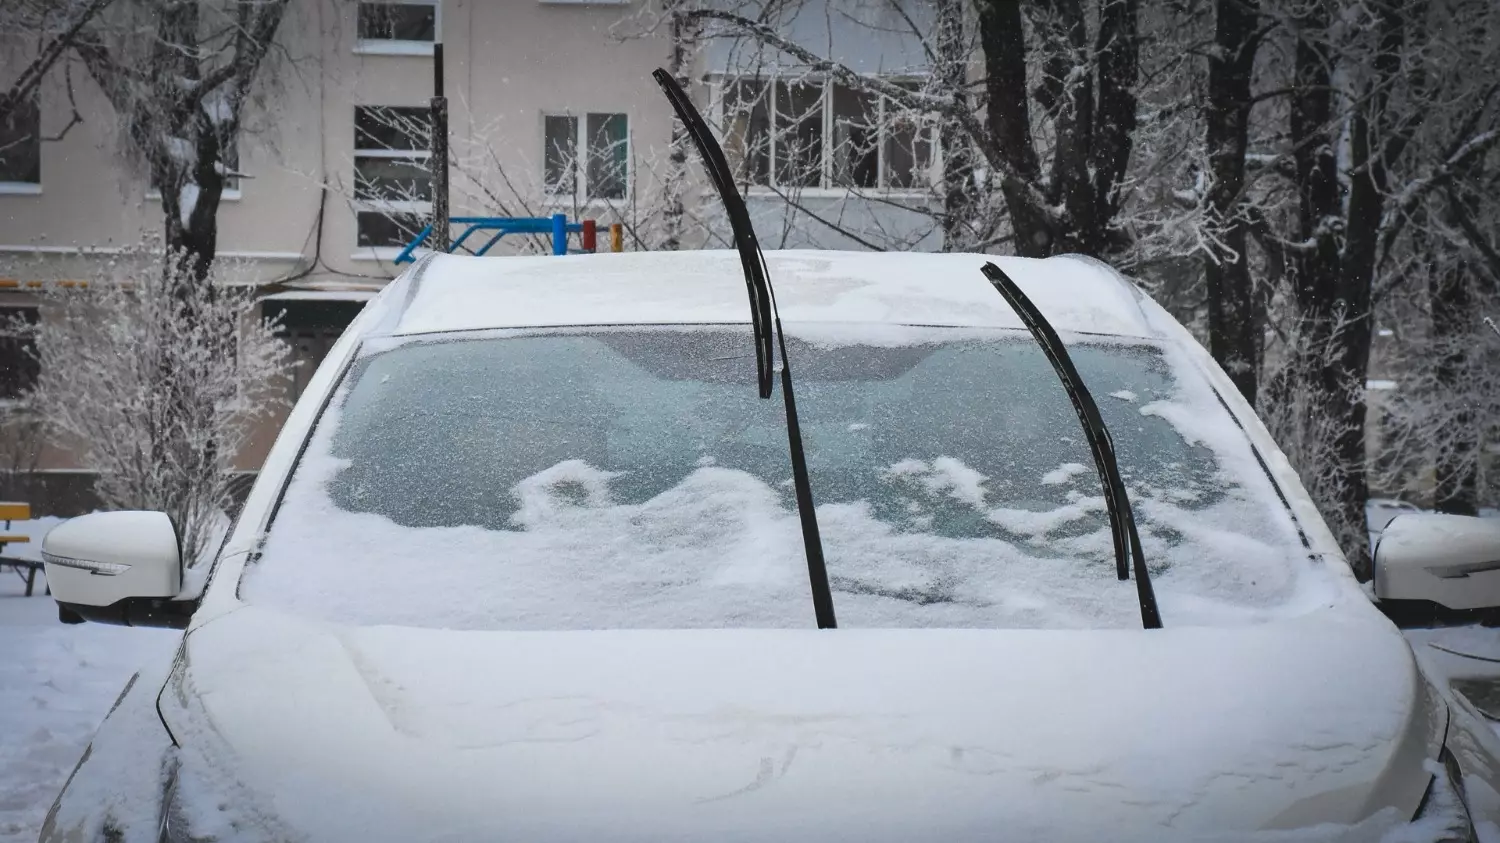 Если на крышу машины упал снег и повредил ее, первым делом нужно вызвать сотрудников полиции и зафиксировать произошедшее